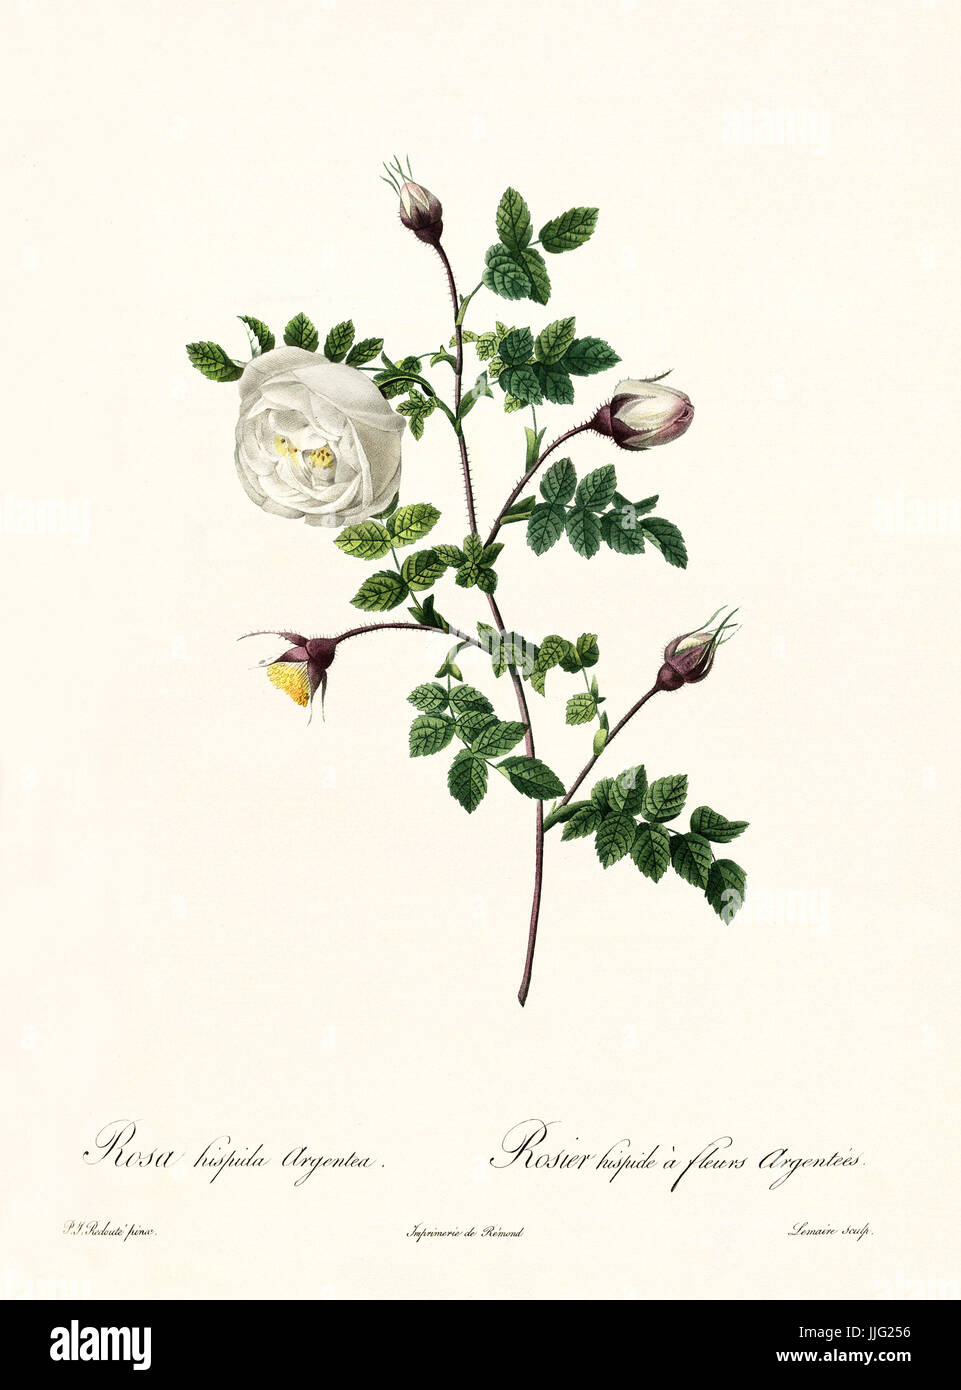 Vieille illustration de Rosa ispida argentea. Créé par P. R. Redoute, publié sur Les Roses, Imp. Firmin Didot, Paris, 1817-24 Banque D'Images